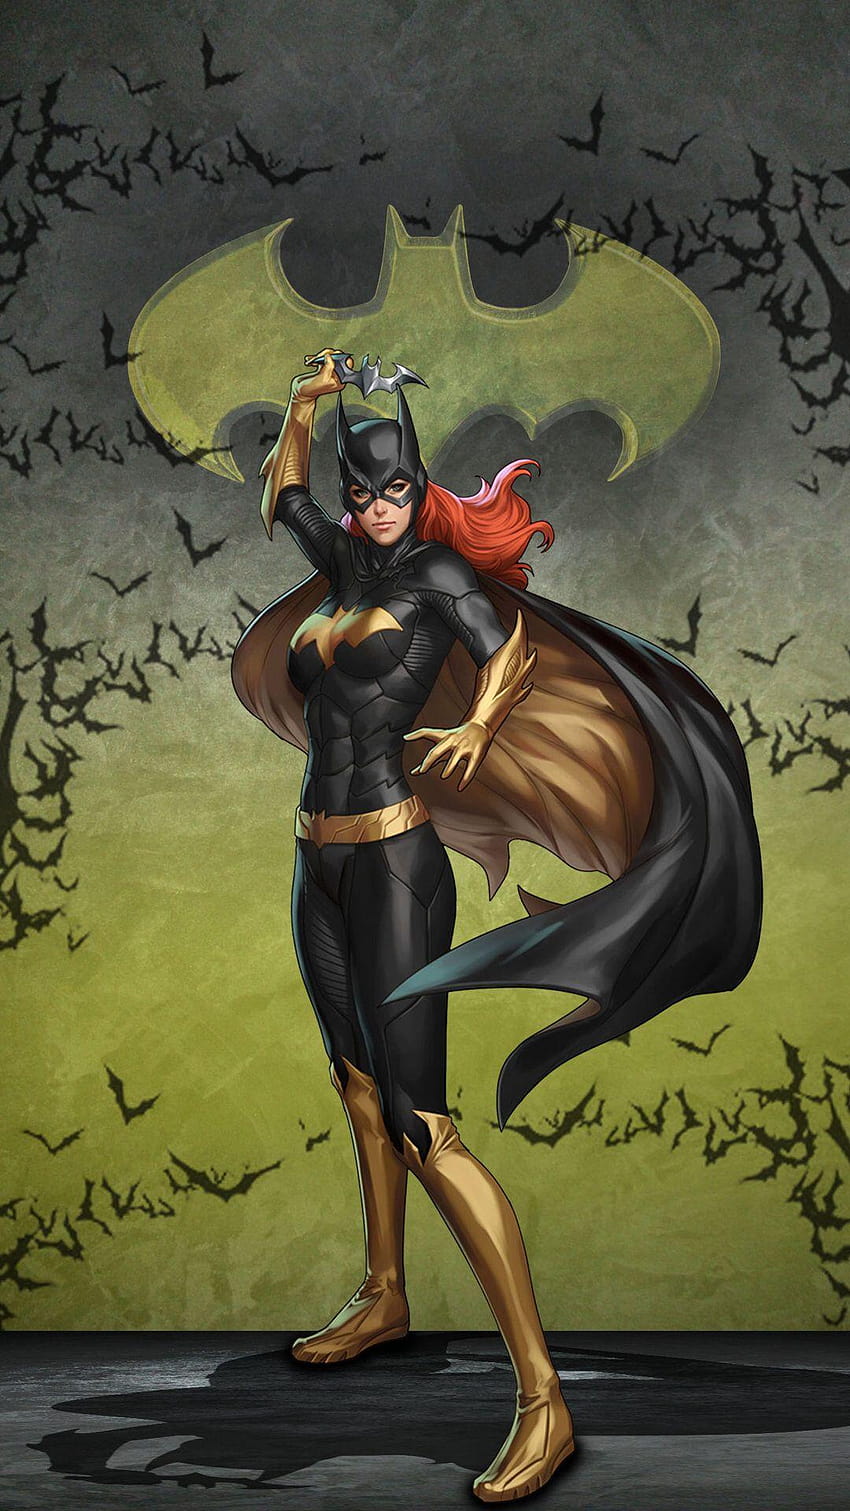 Matthew Gray en Superhéroe/Fantasía, dibujos animados de batwoman fondo de pantalla del teléfono